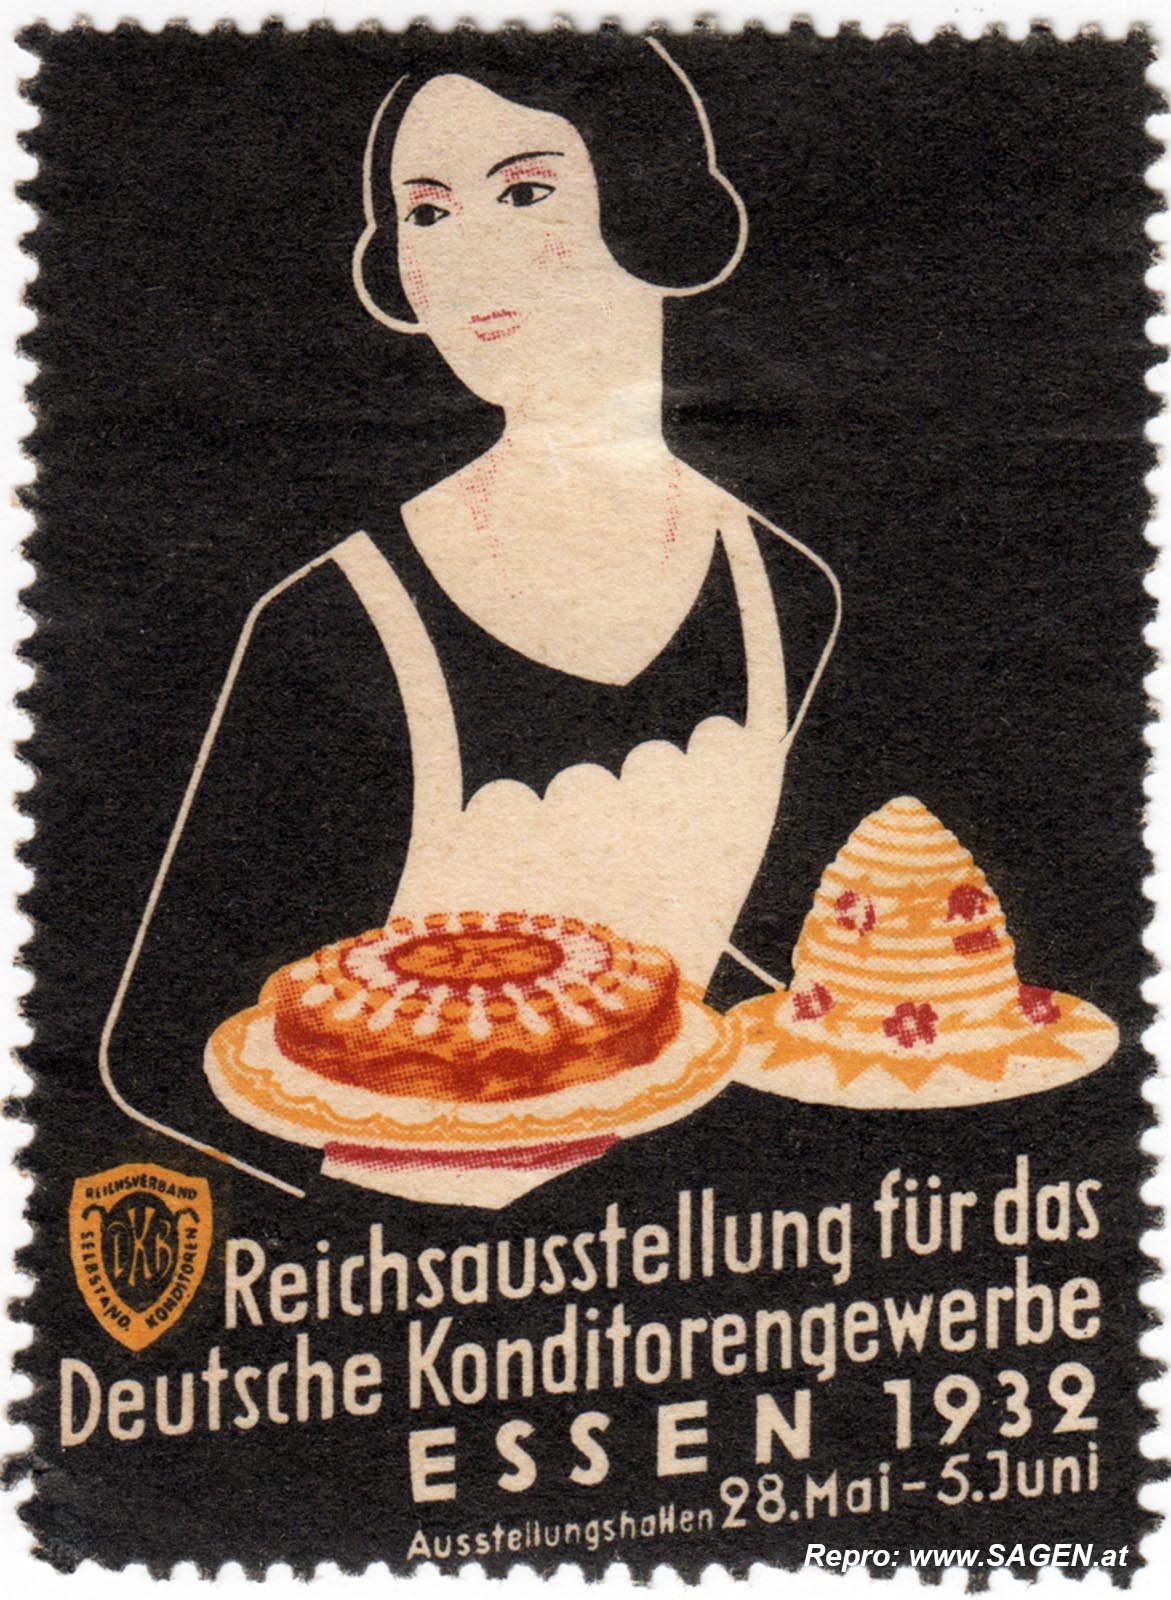 Reklamemarke Reichsausstellung Konditorengewerbe 1932